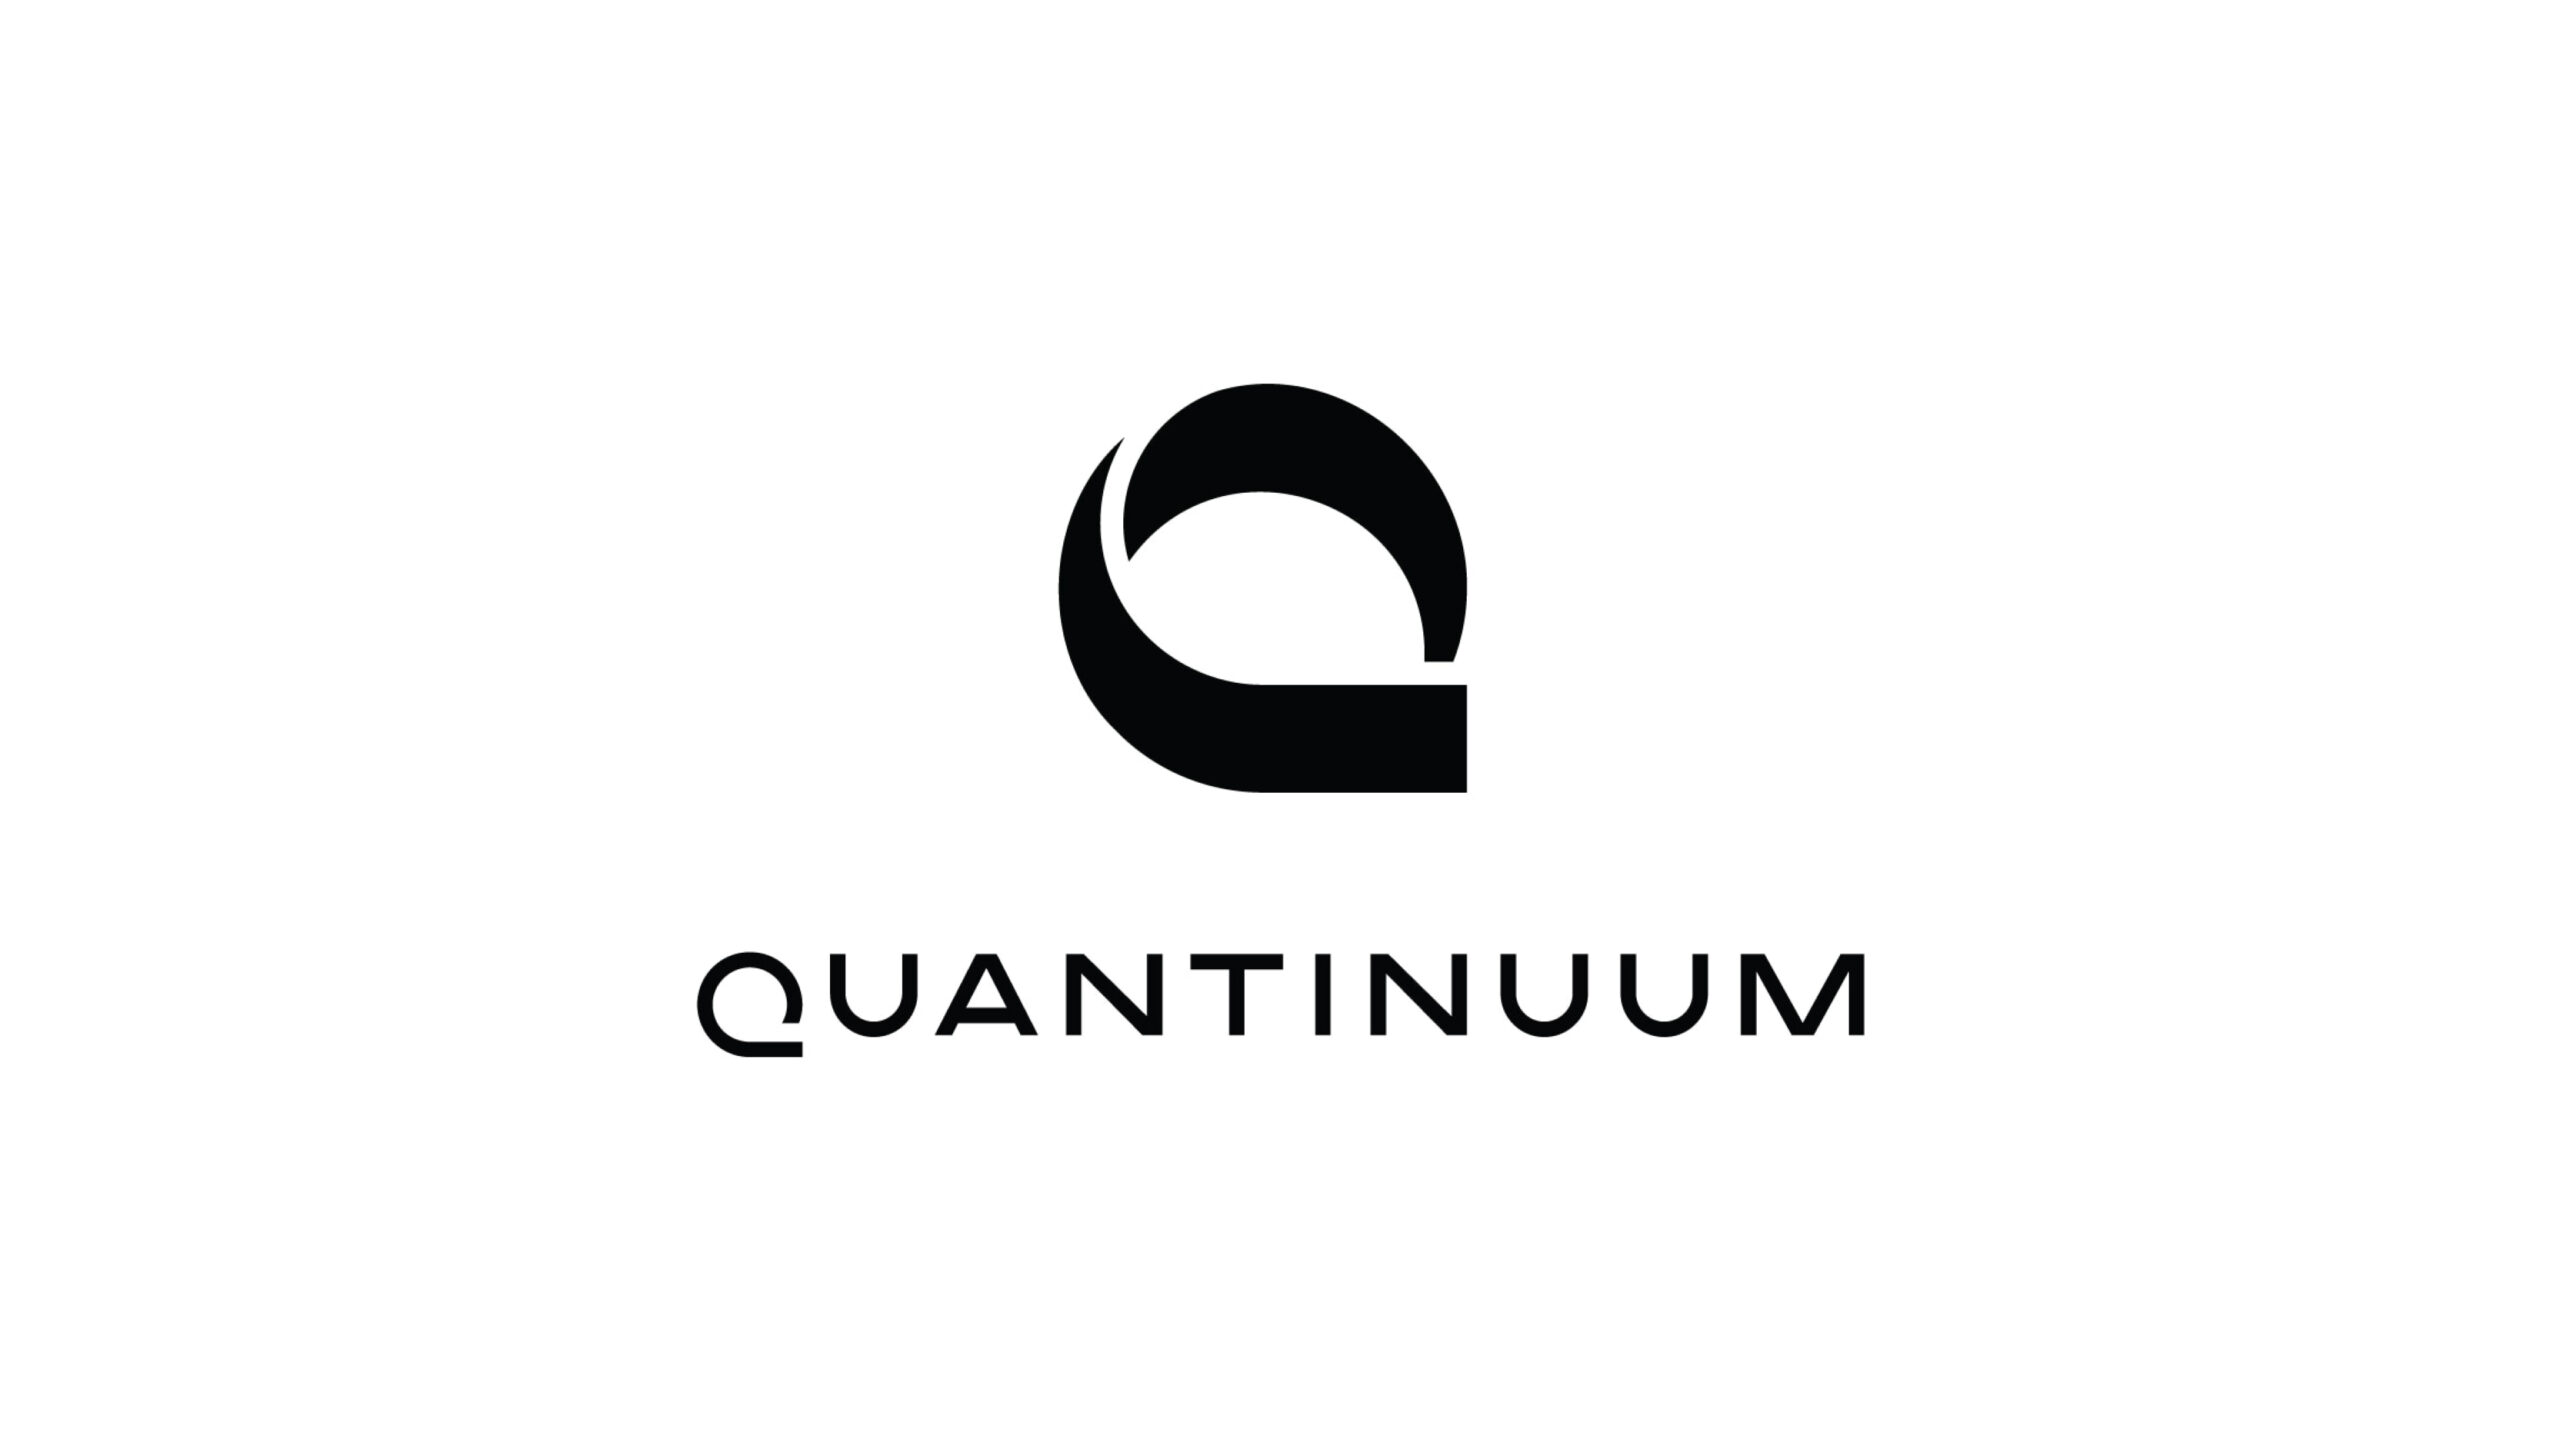 世界をリードする統合型量子コンピューティング企業Quantinuumが3億ドルの資金調達を実施